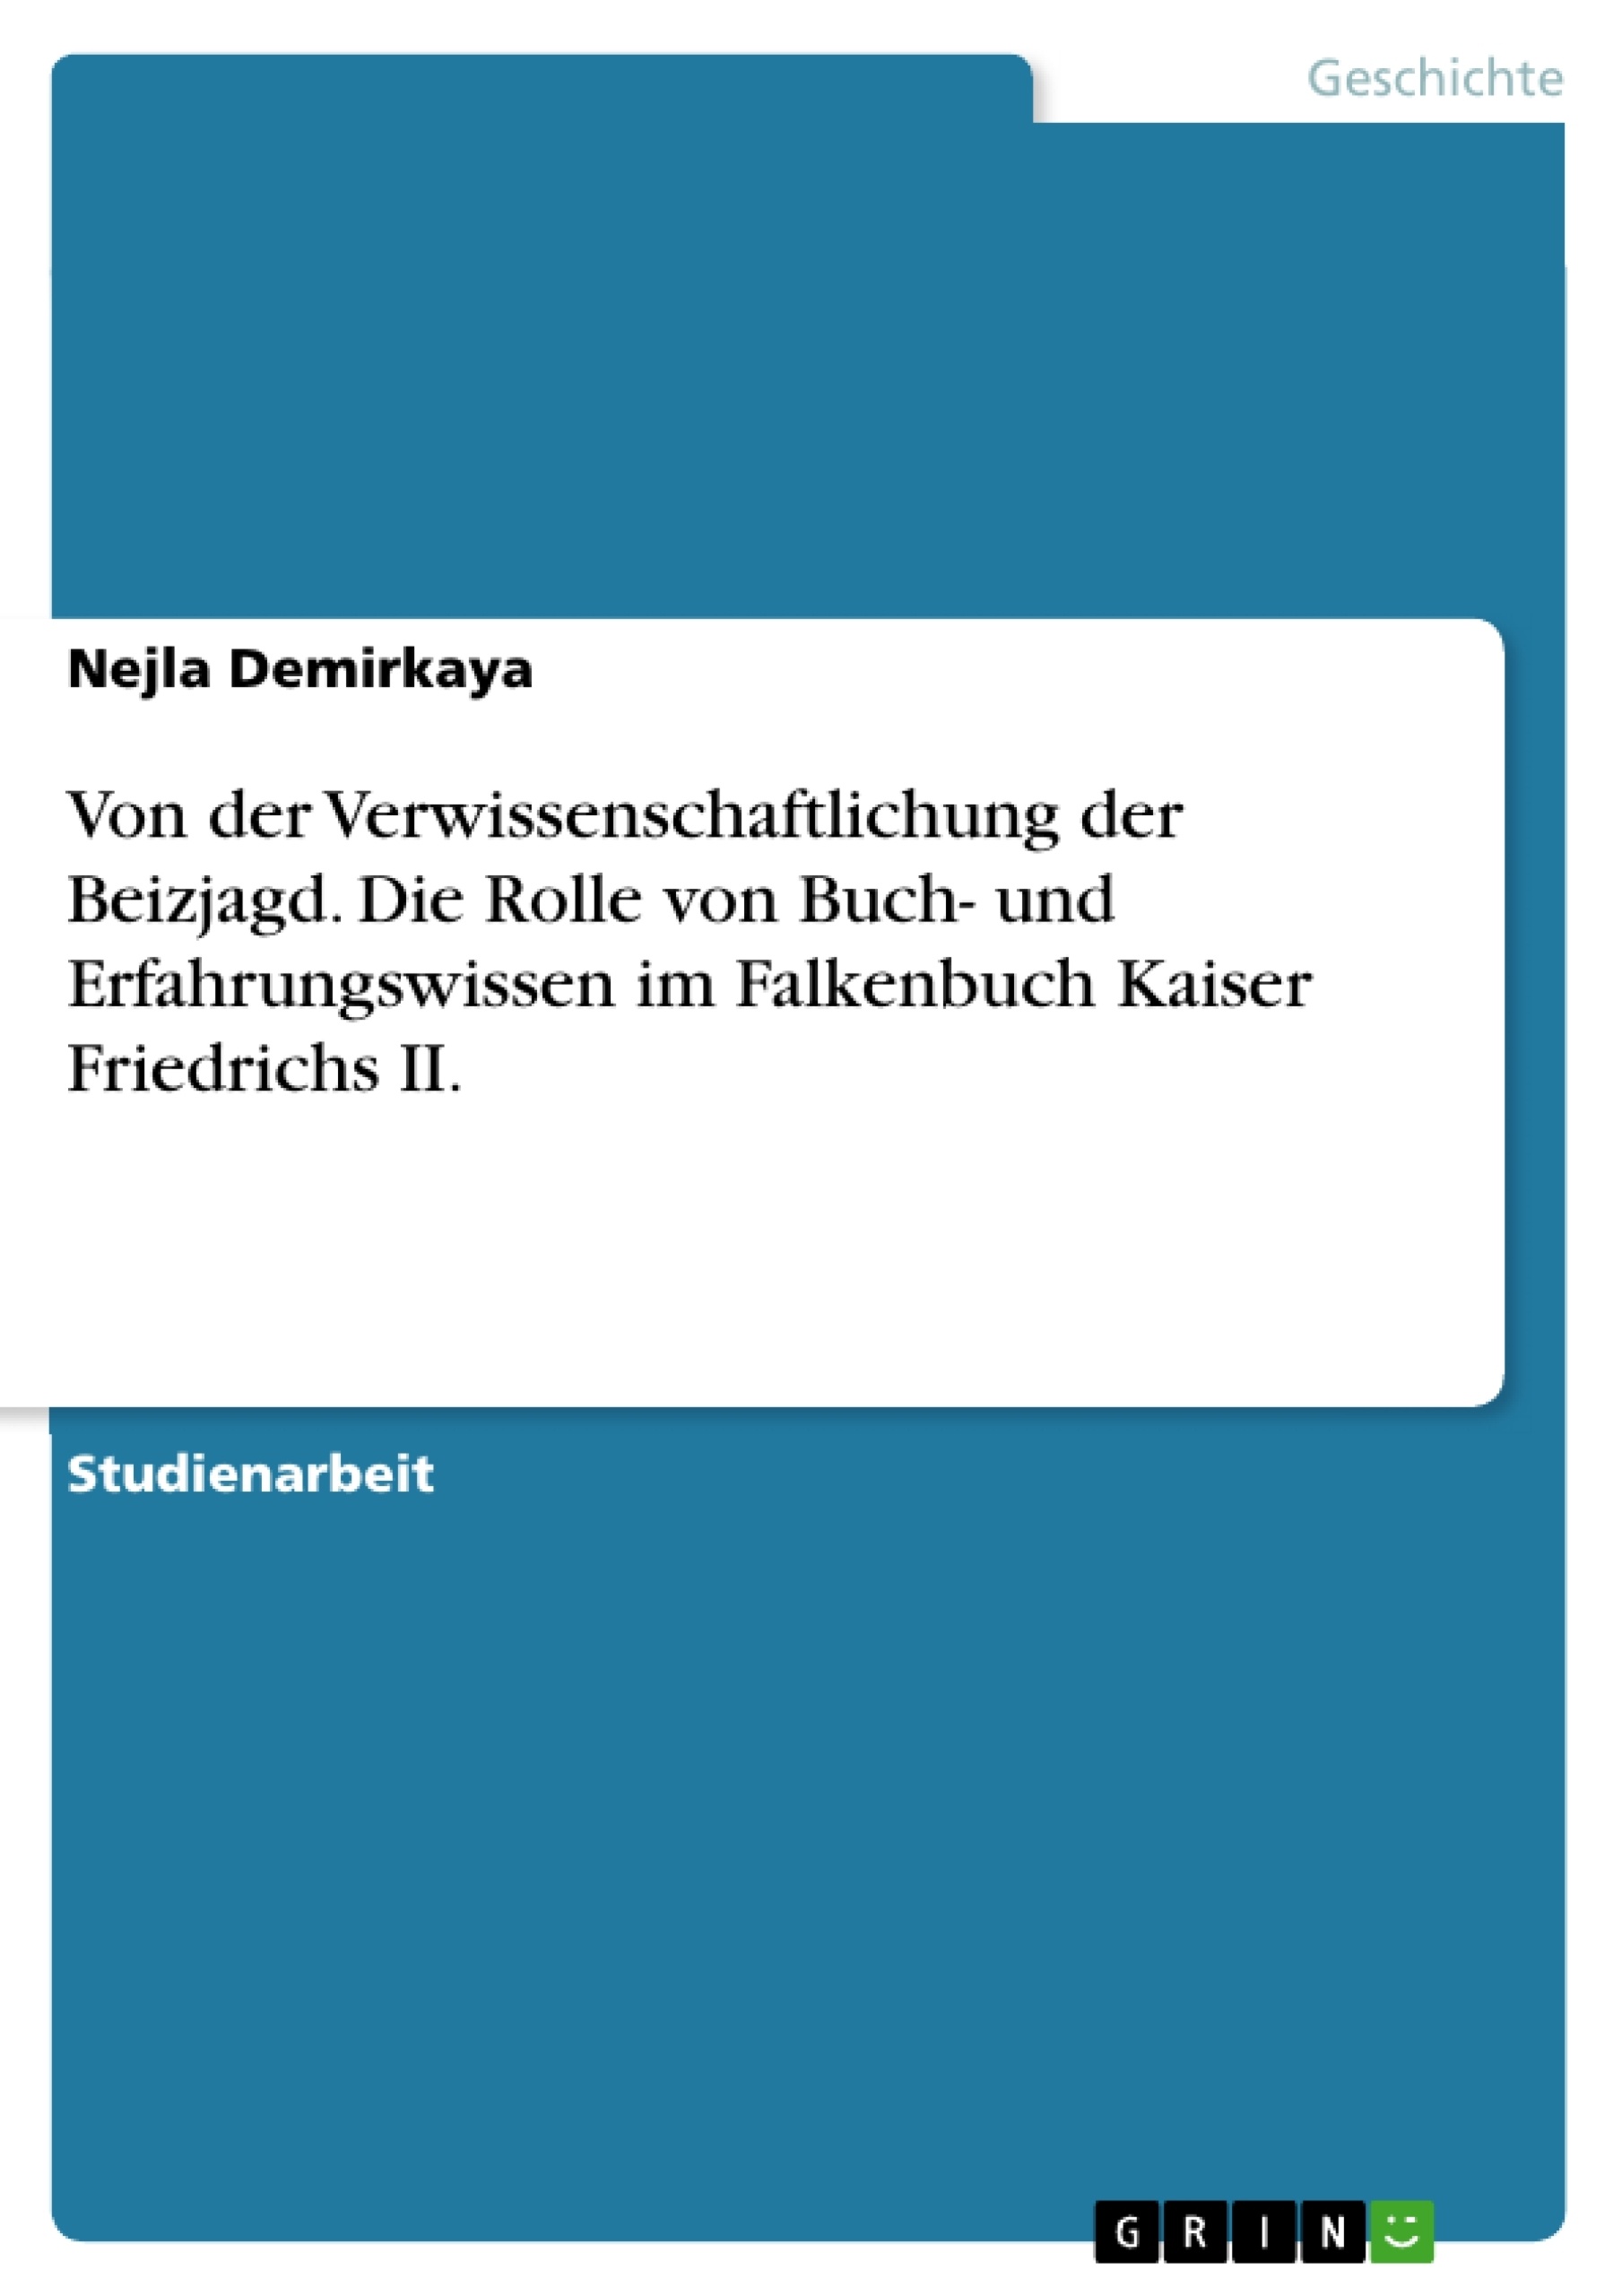 Título: Von der Verwissenschaftlichung der Beizjagd. Die Rolle von Buch- und Erfahrungswissen im Falkenbuch Kaiser Friedrichs II.